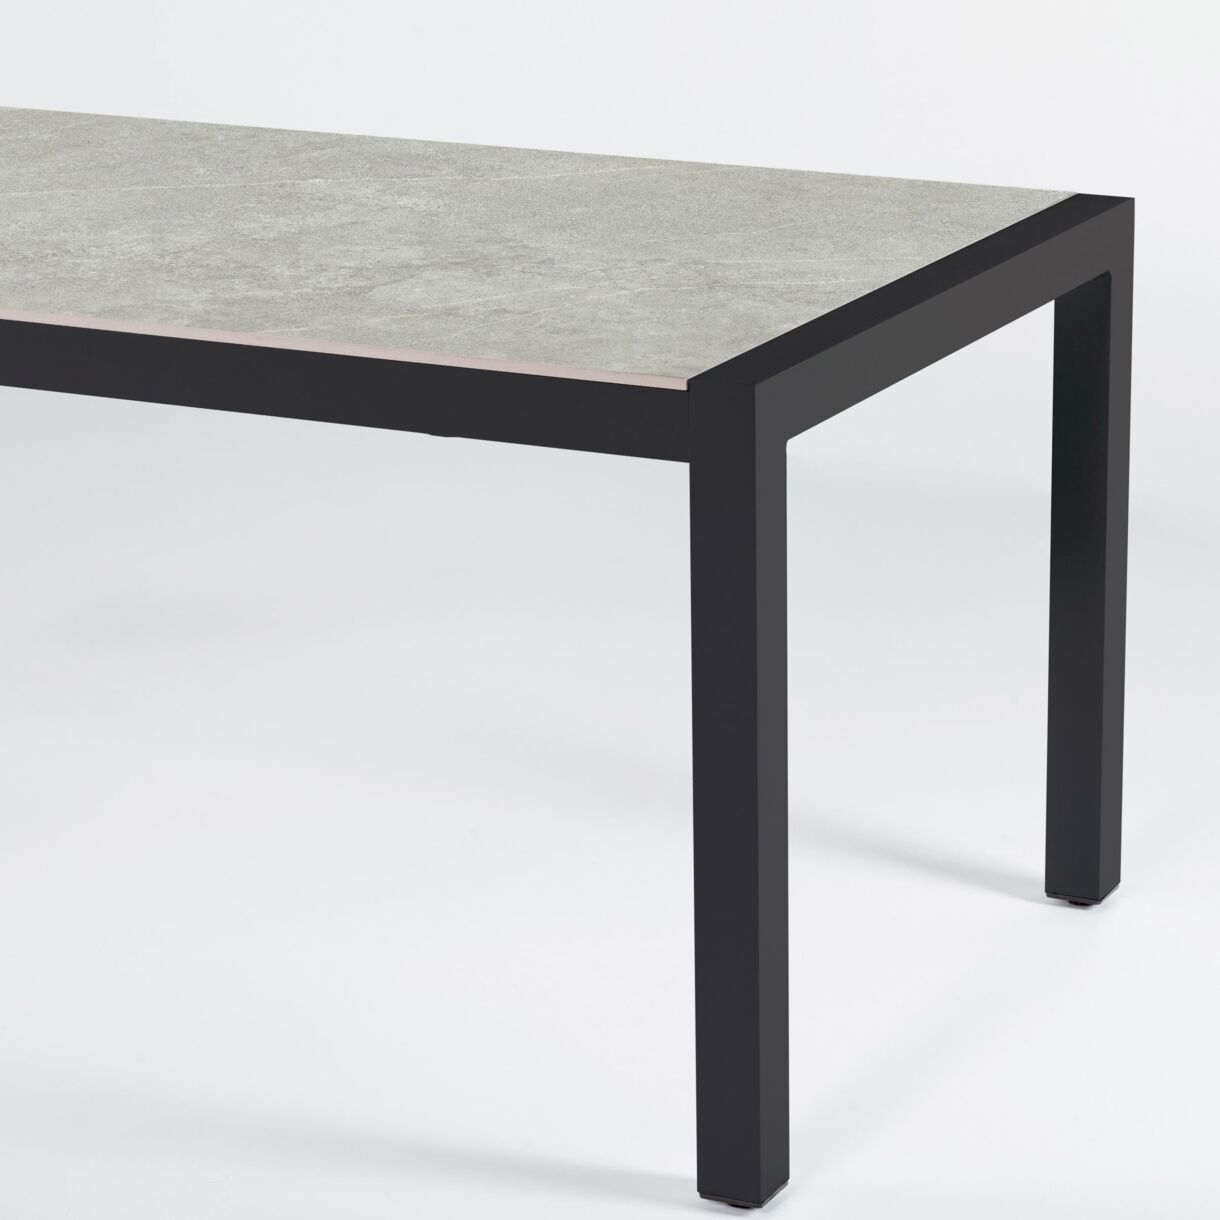 Table de jardin 8 places Aluminium/Céramique Modena (180 x 90 cm) - Gris anthracite/Gris clair